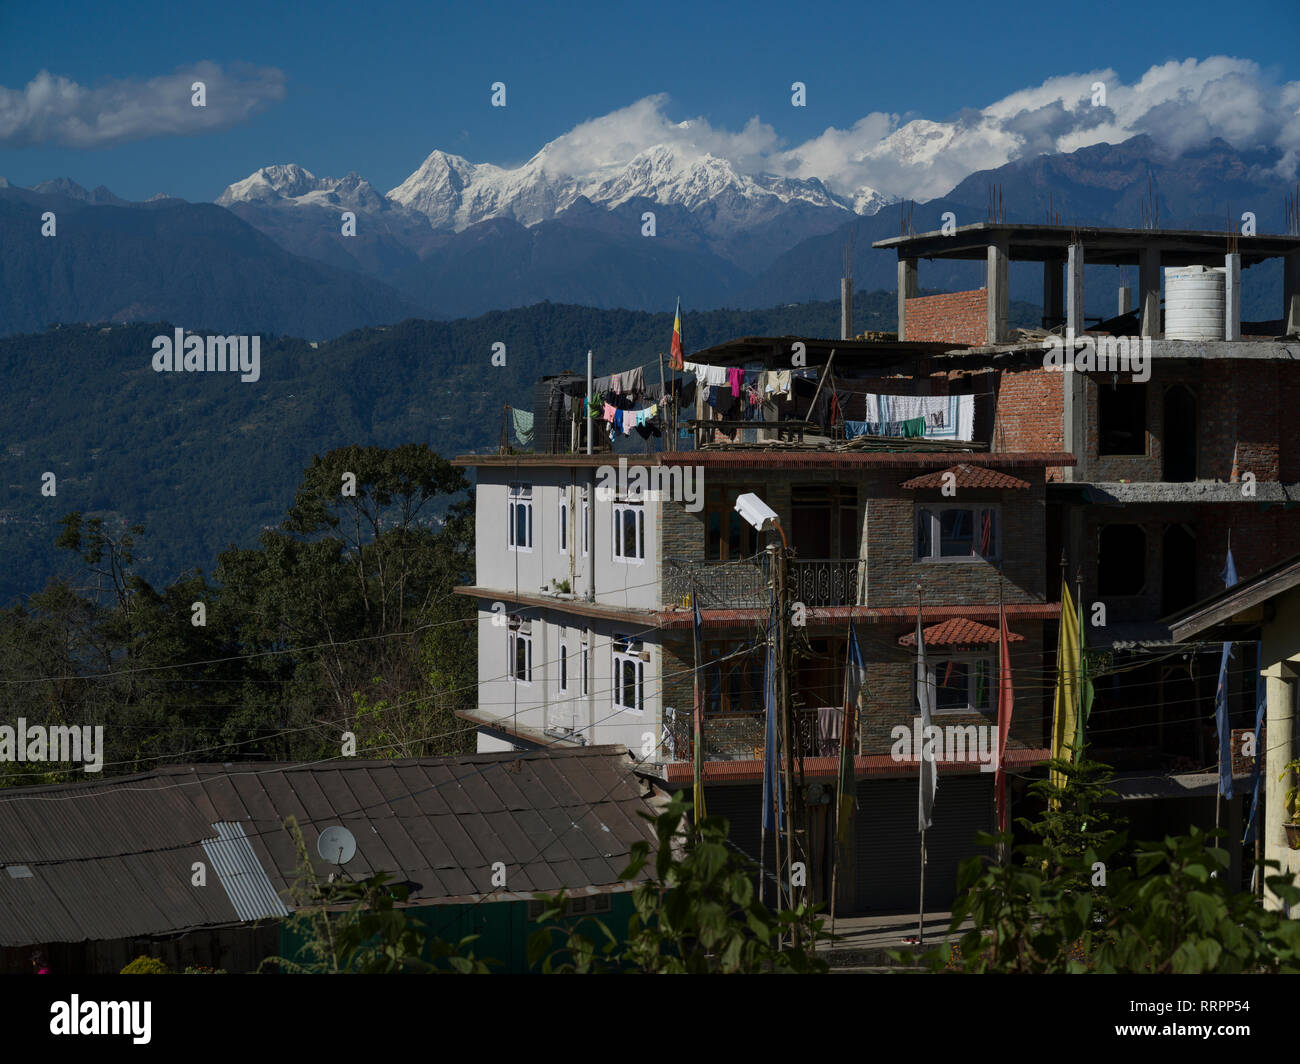 Edifici in villaggio con montagne coperte di neve in background, Kaluk, Sikkim, India Foto Stock